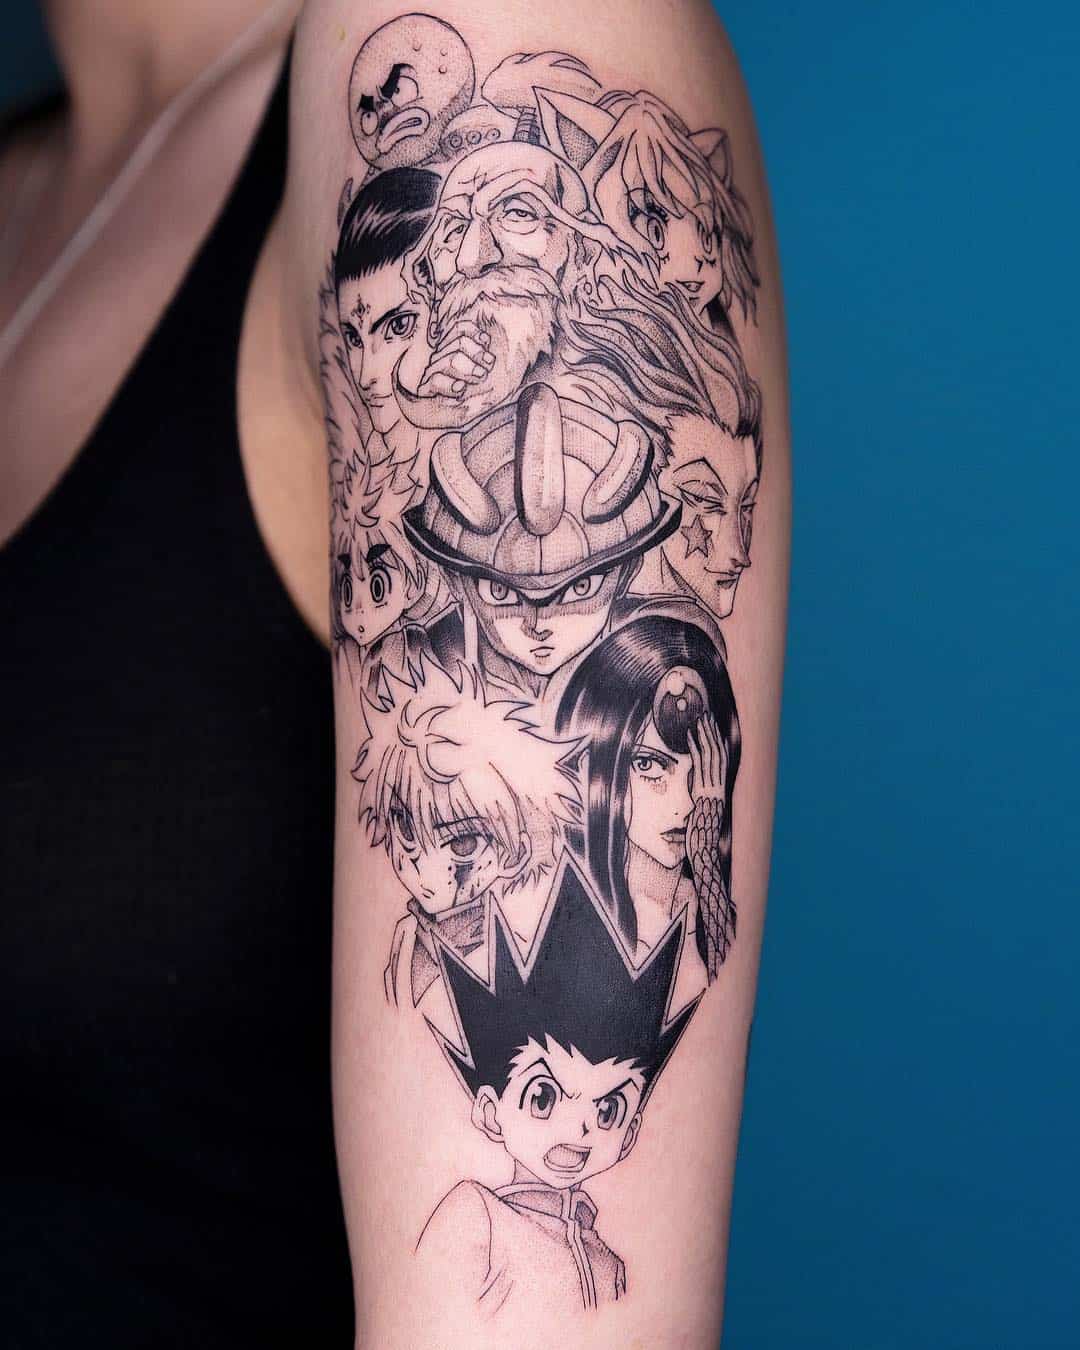 Tattoo artist Oozy